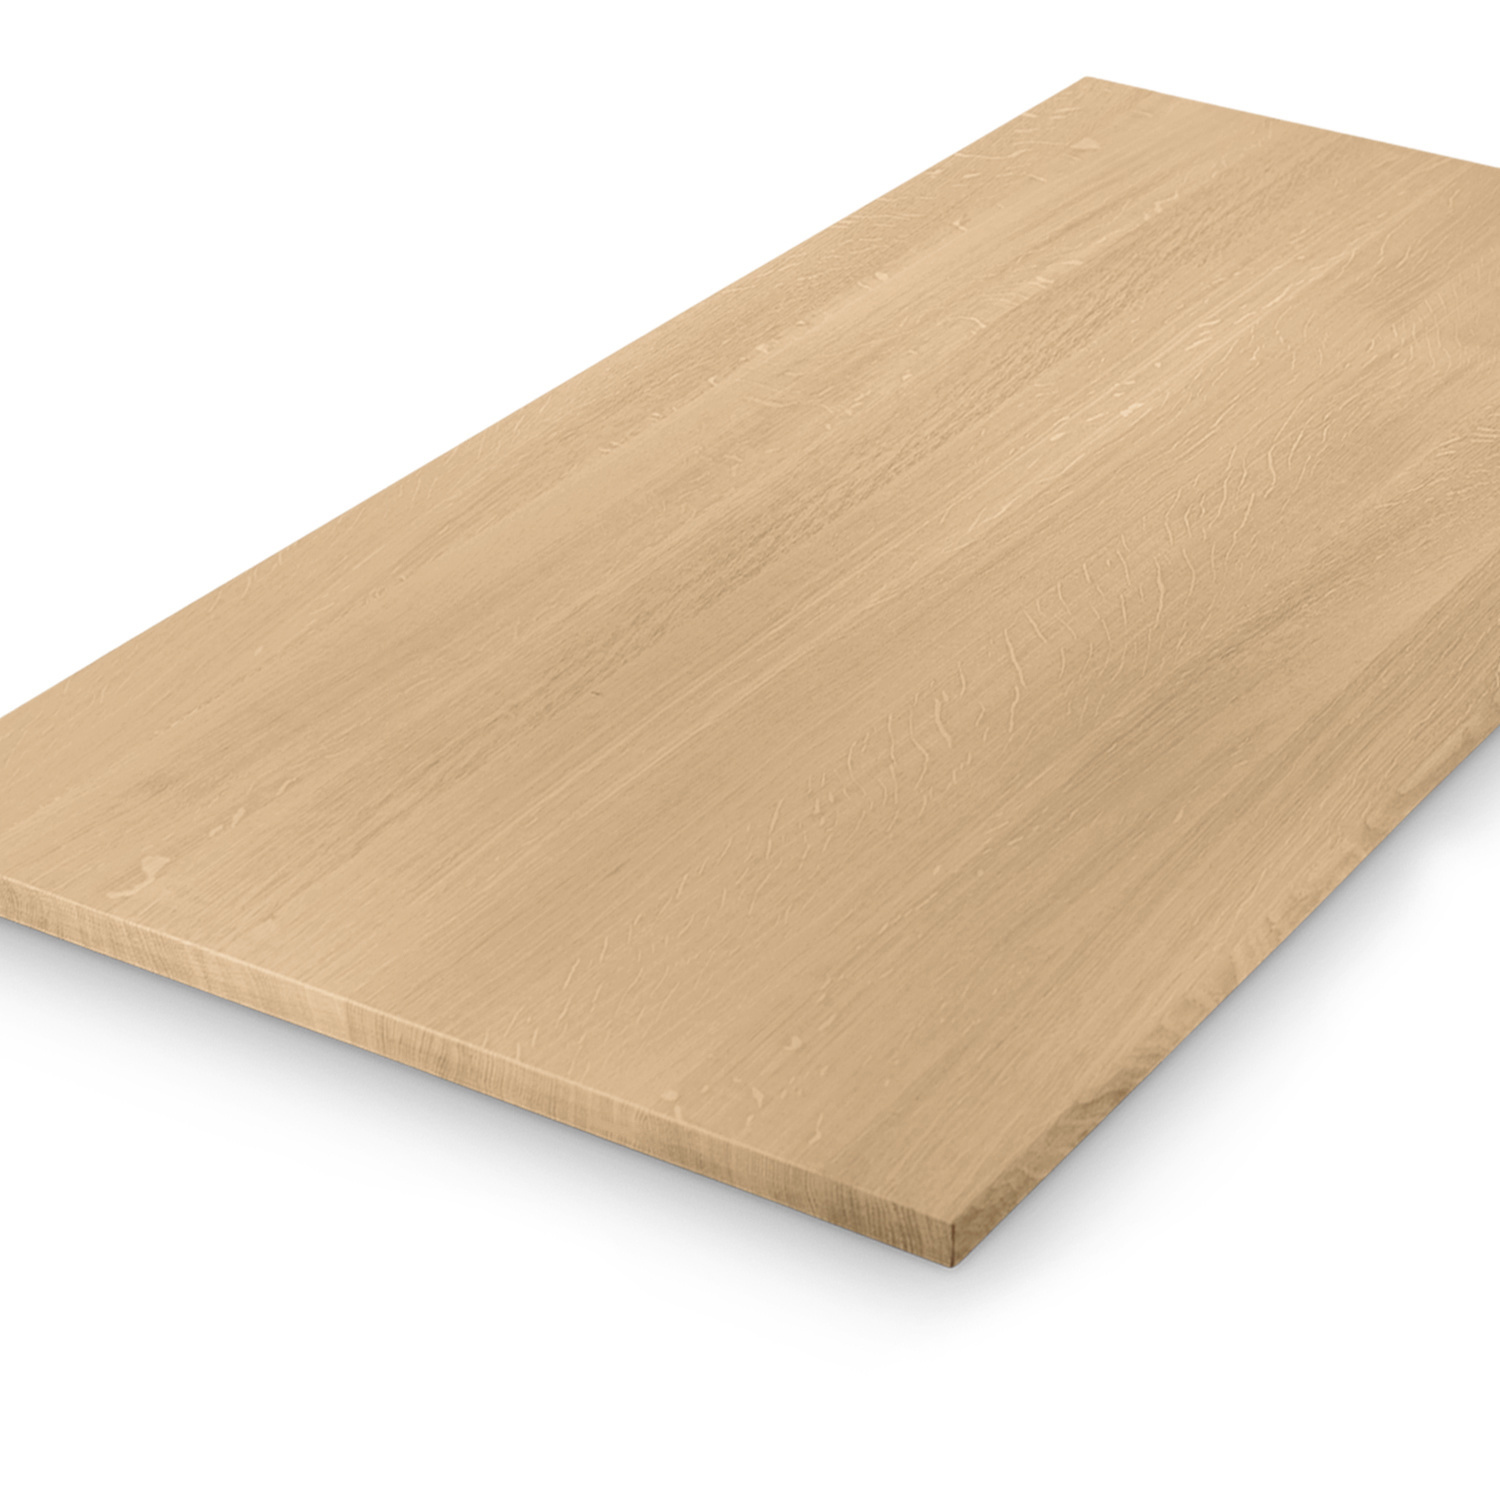  Tischplatte Eiche - 2,7 cm dick (1-Schicht) - Breite Lamellen (10 - 12 cm breit) - Eichenholz A-Qualität - verleimt & künstlich getrocknet (HF 8-12%) - verschiedene Größen